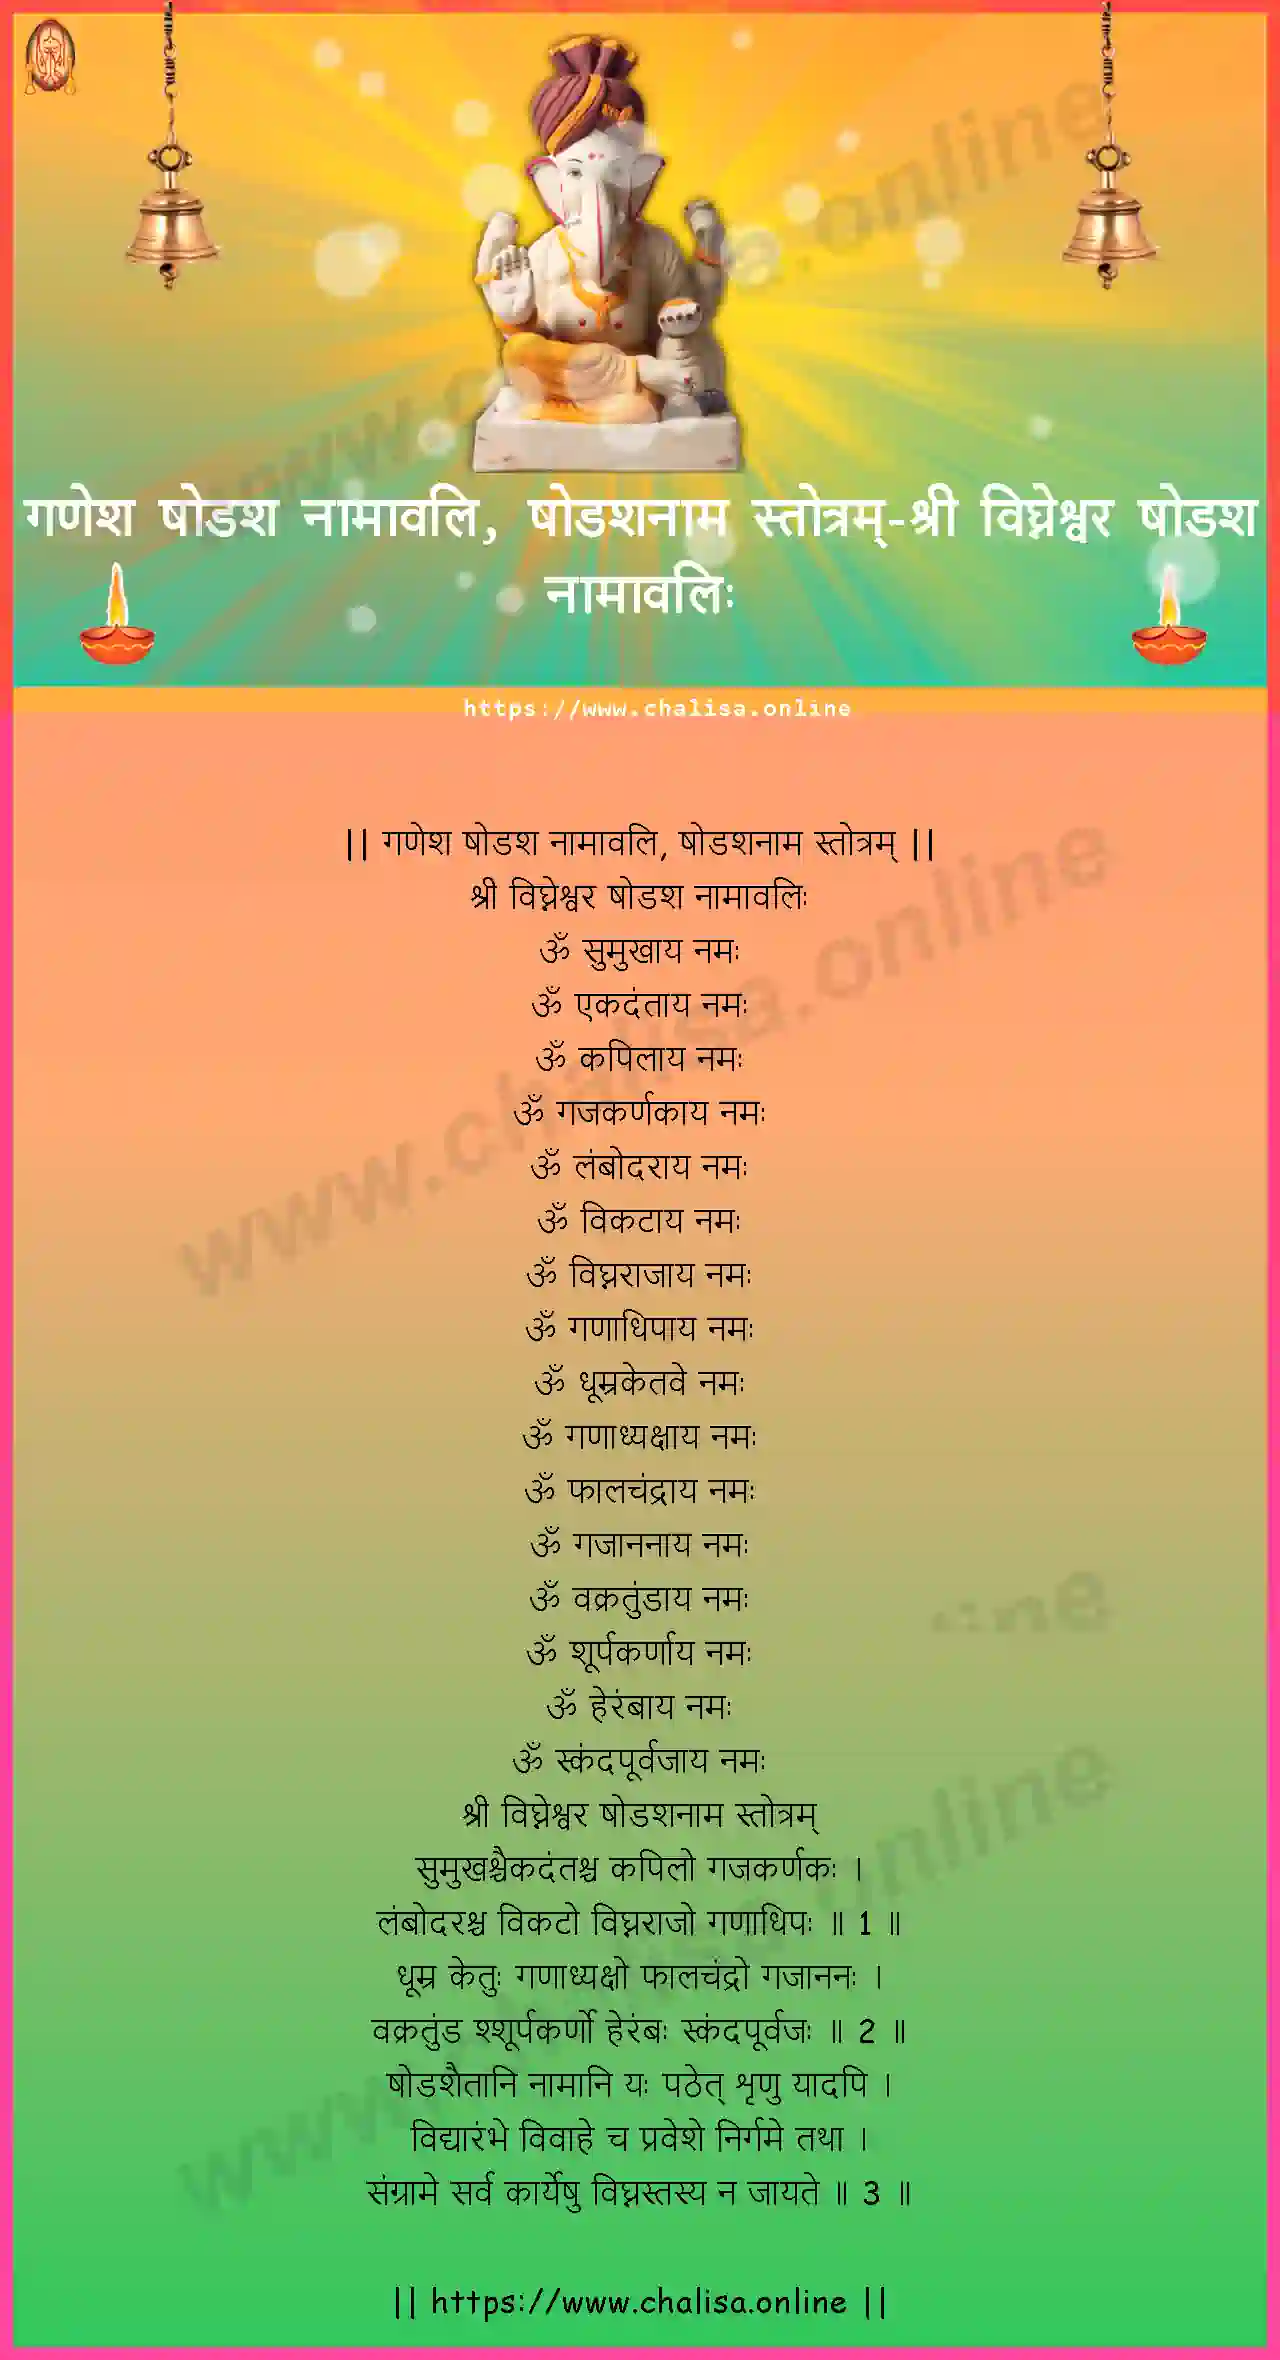 sri-vighnesvara-ganesha-shodasha-namavali,-shodashanama-stotram-hindi-hindi-lyrics-download